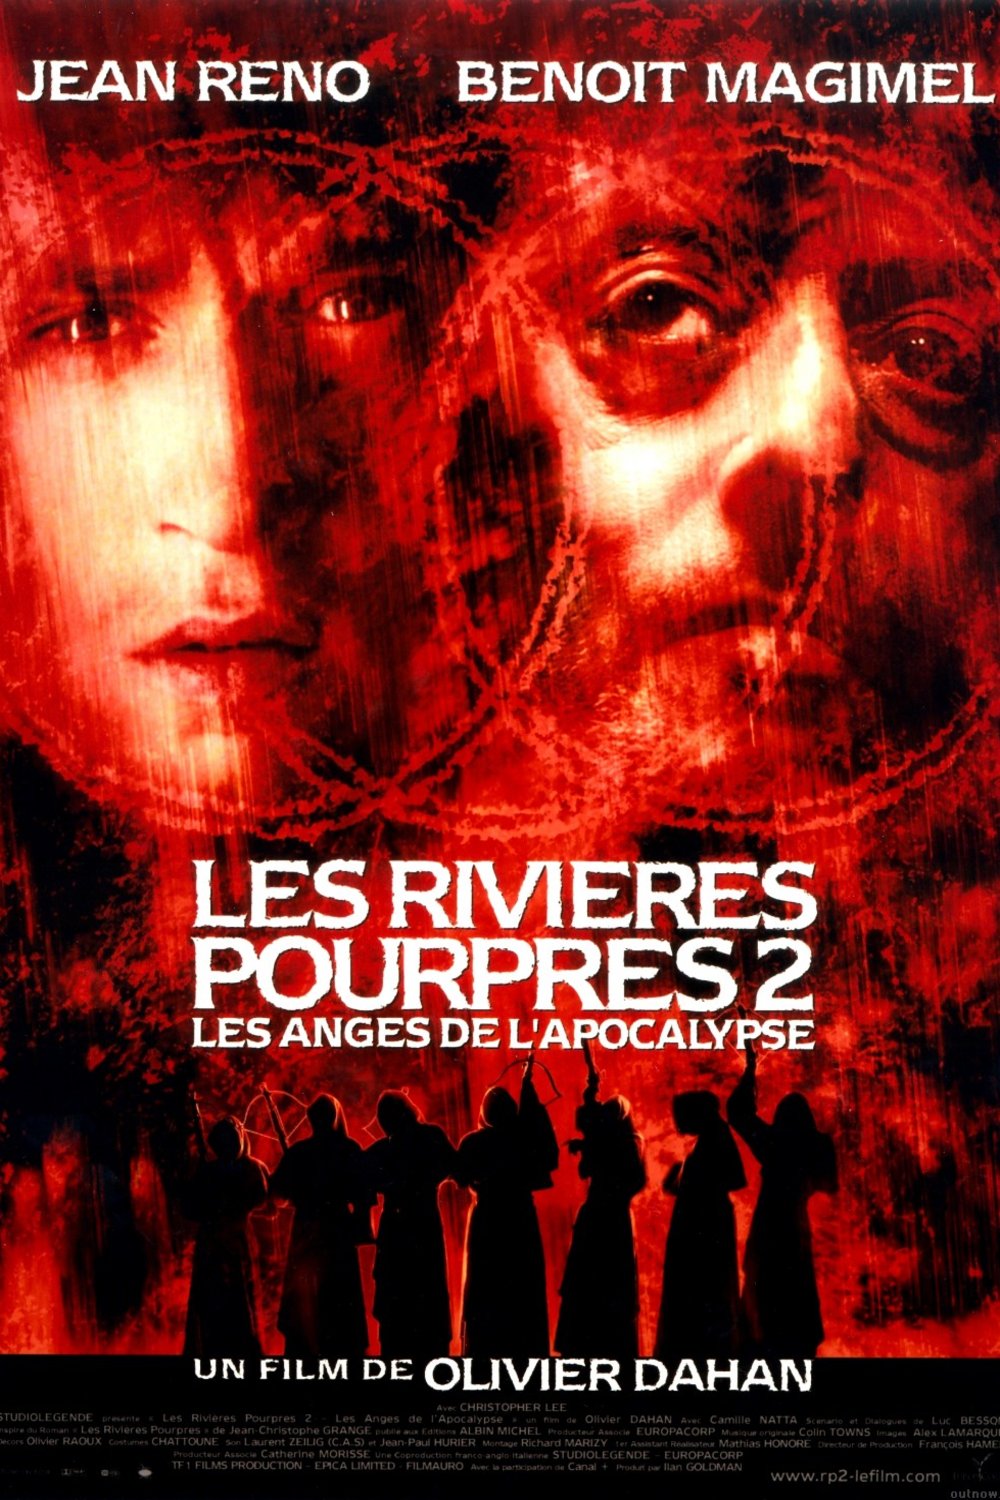 Poster of the movie Les Rivières pourpres 2: les anges de l'apocalypse